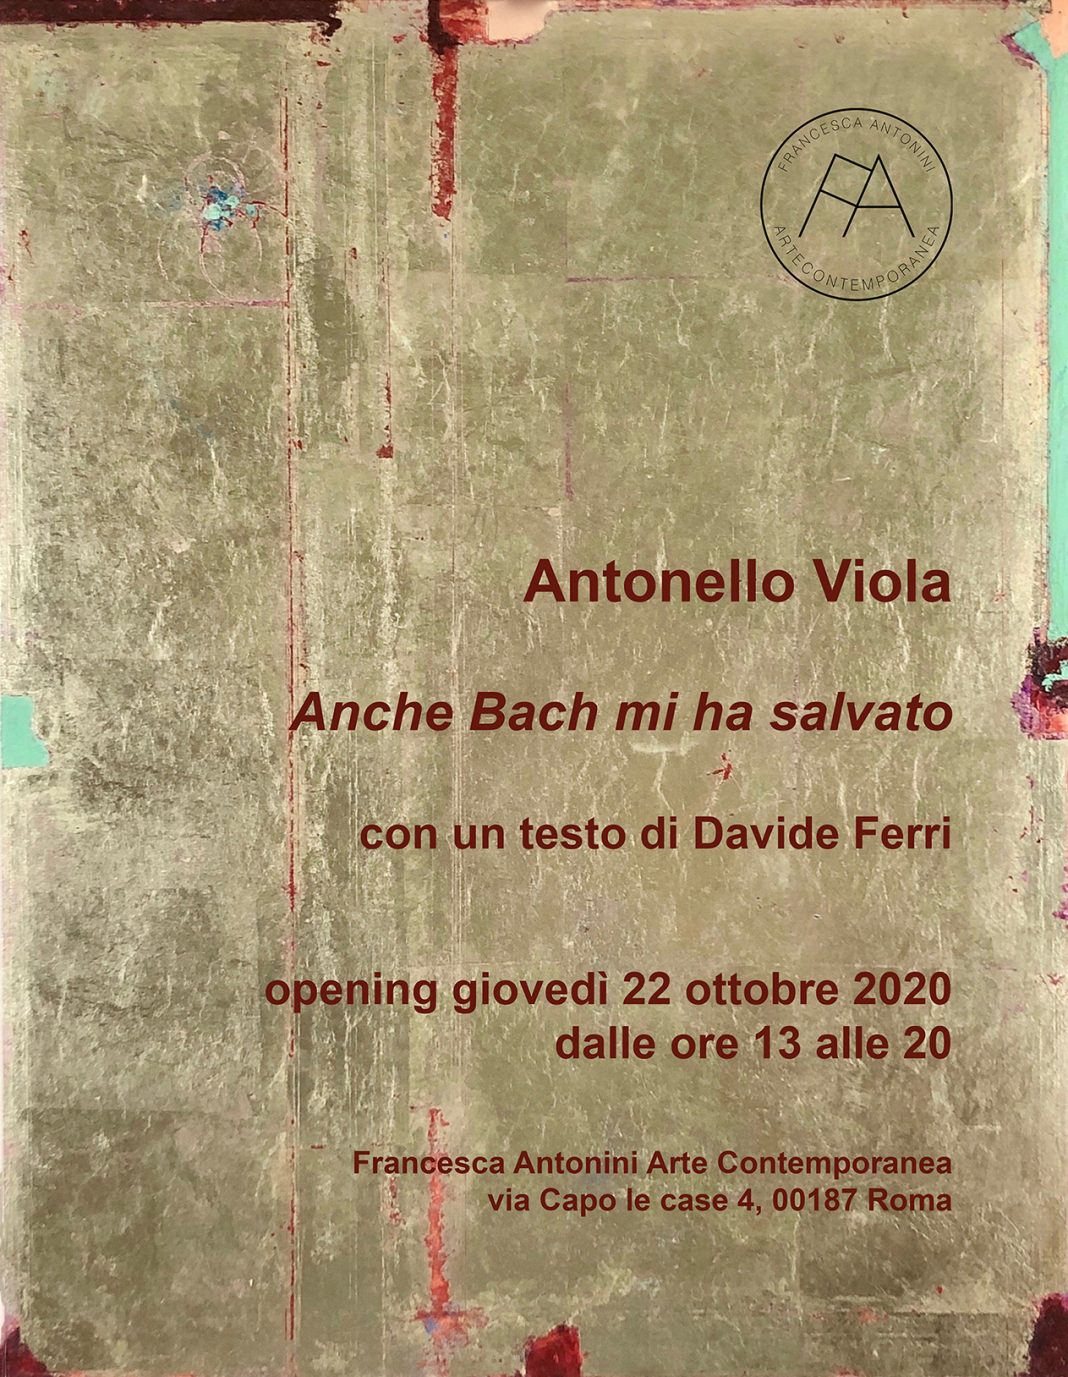 Antonello Viola – Anche Bach mi ha salvatohttps://www.exibart.com/repository/media/formidable/11/1.Invito-Anche-Bach-mi-ha-salvato-2020-1068x1377.jpg